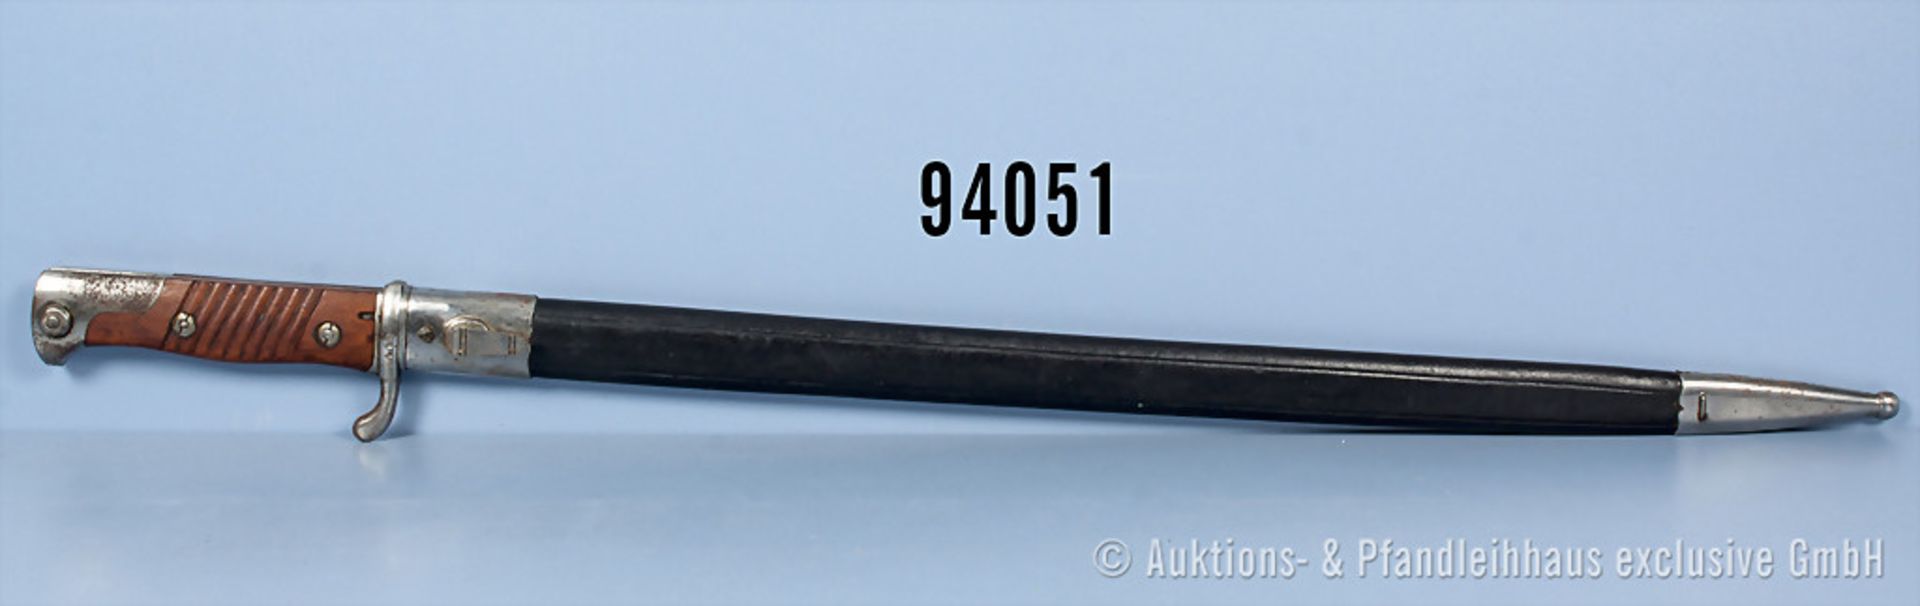 Seitengewehr 98, Hersteller "Simson & Co Suhl", dazugehörige Lederscheide, Nr. "7118" auf der